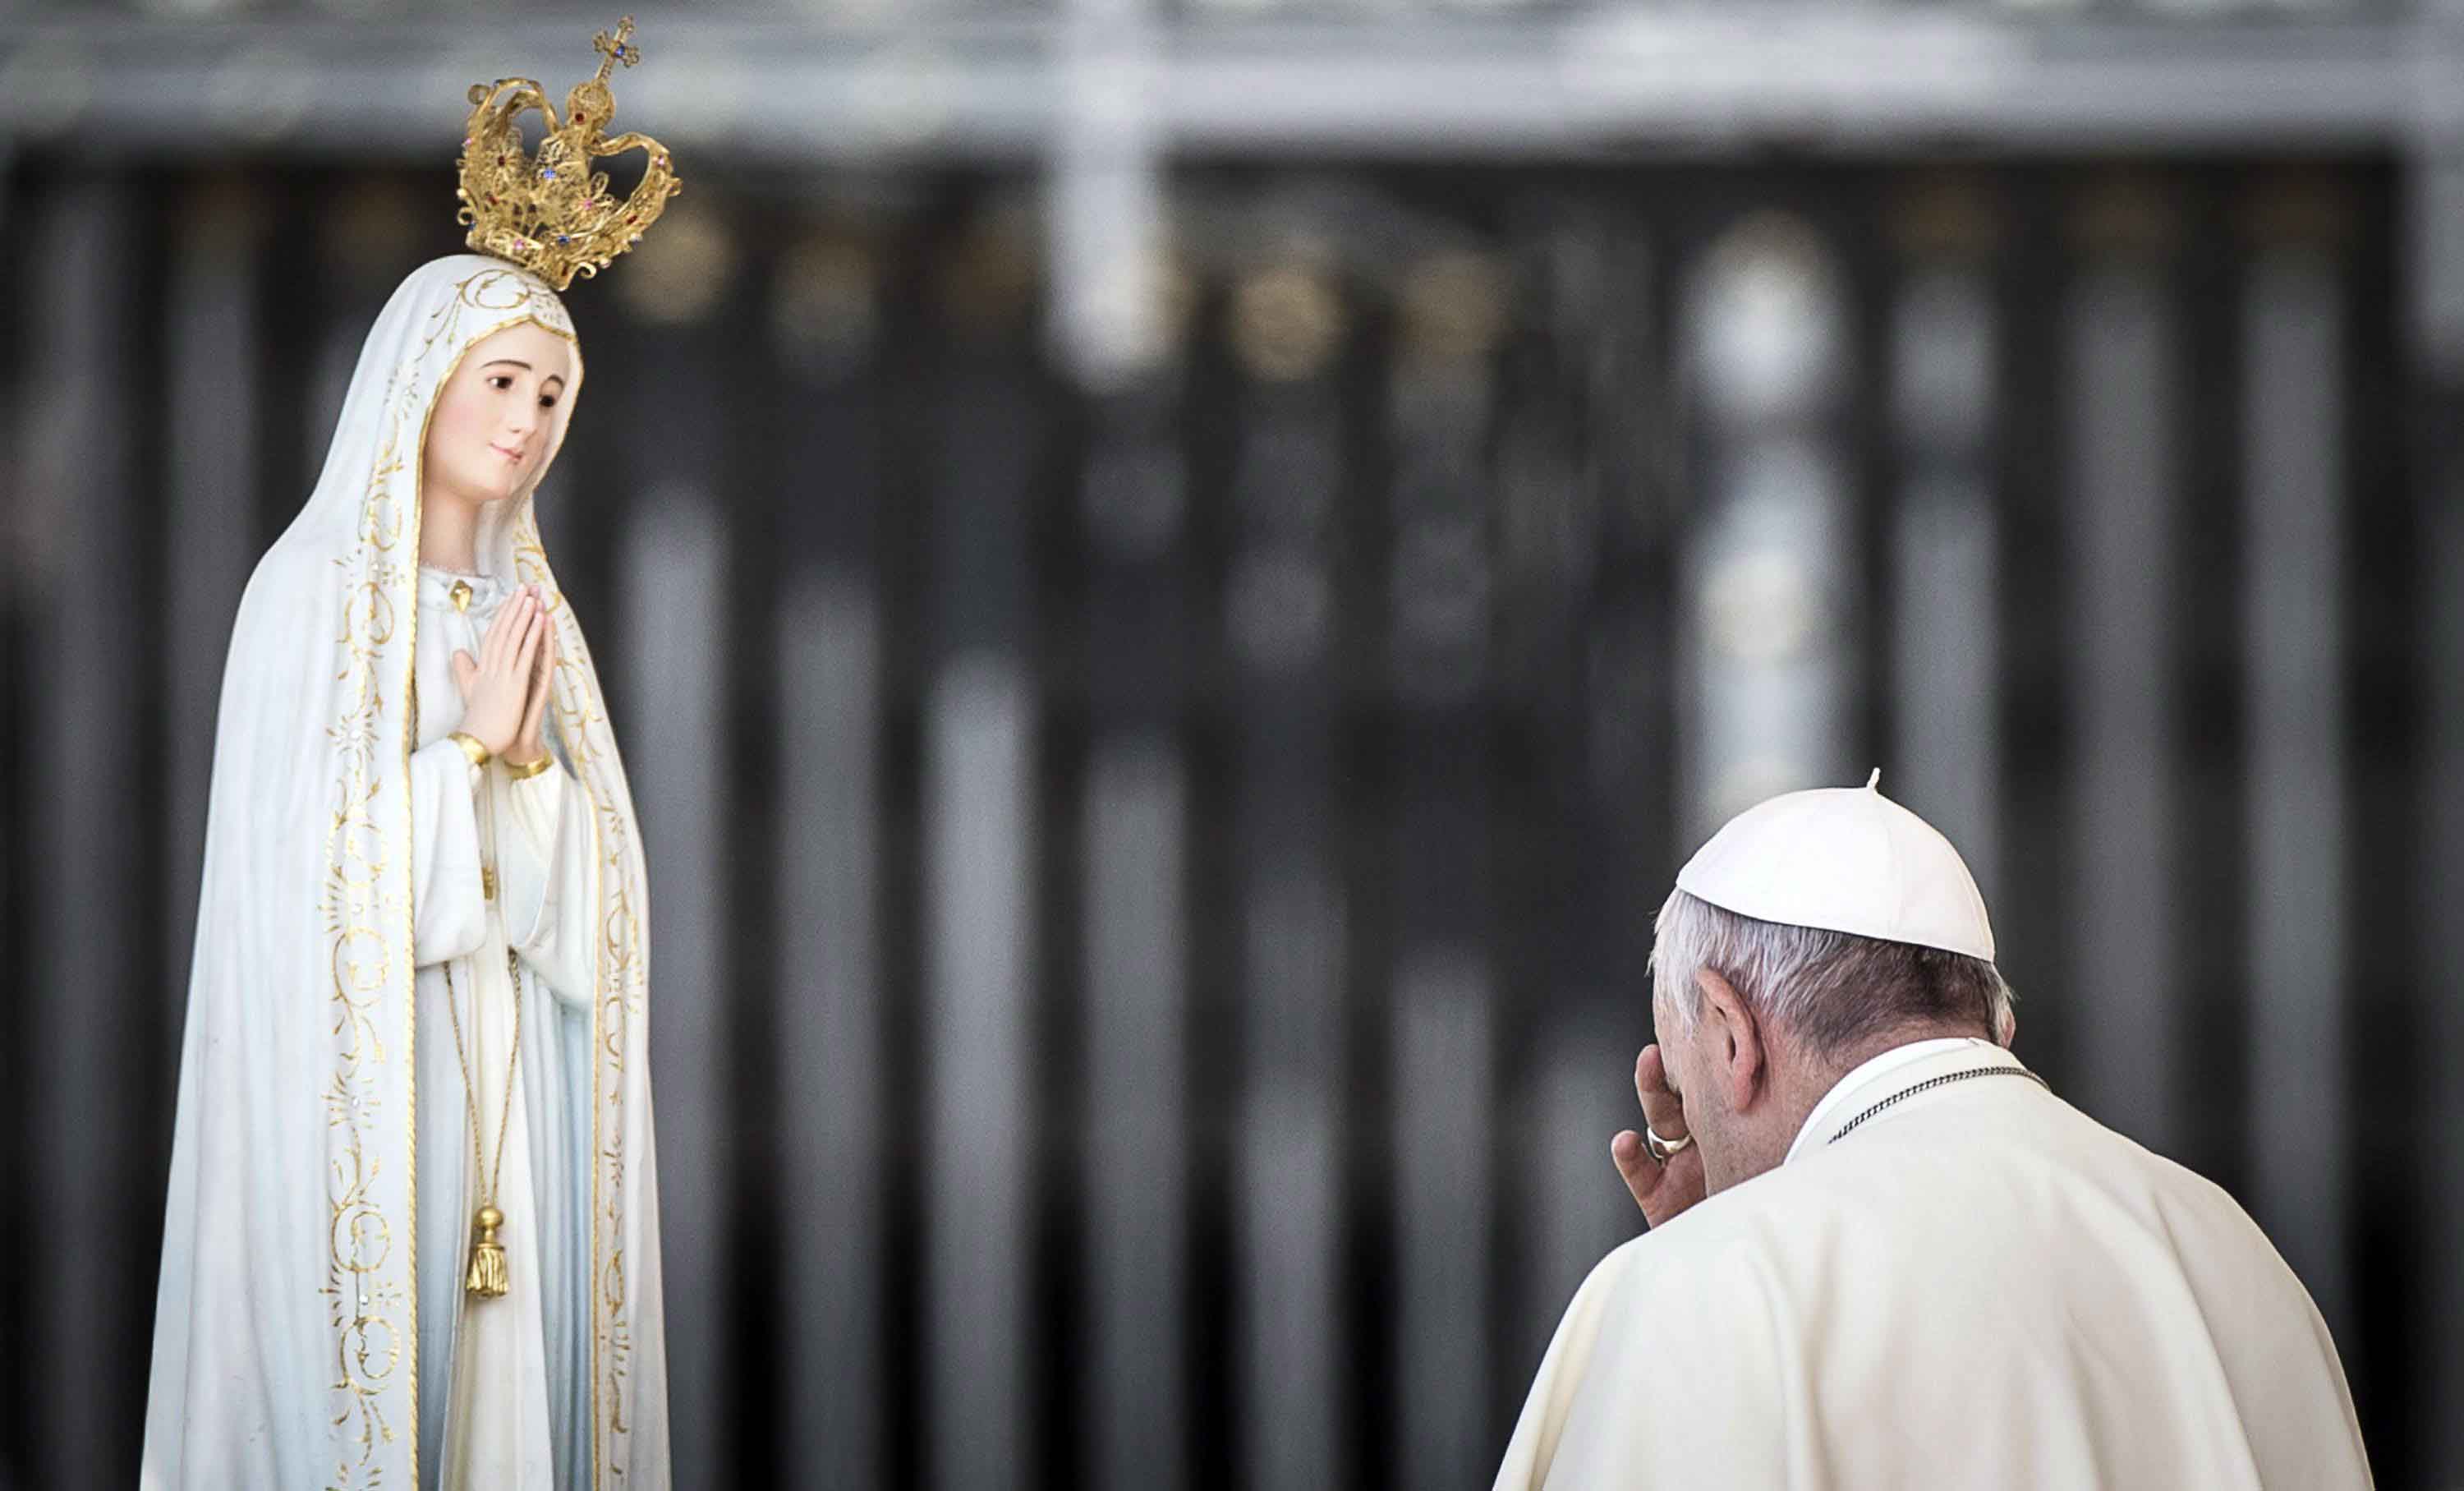 La medida preventiva será tomada a propósito de la visita del papa Francisco por el centenario de Fátima